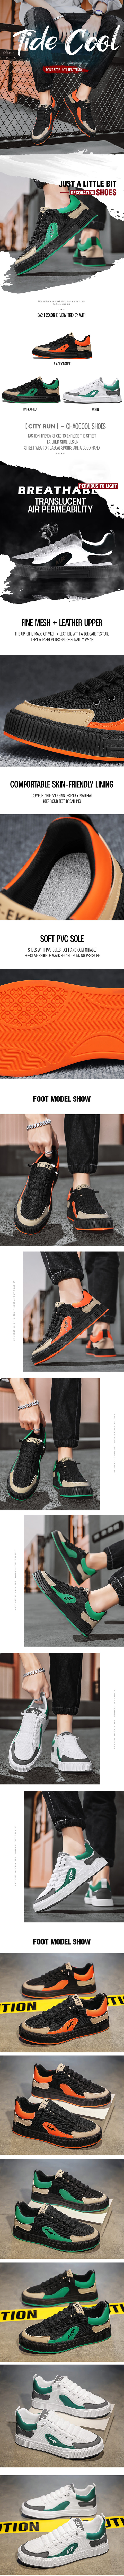 橙色板鞋